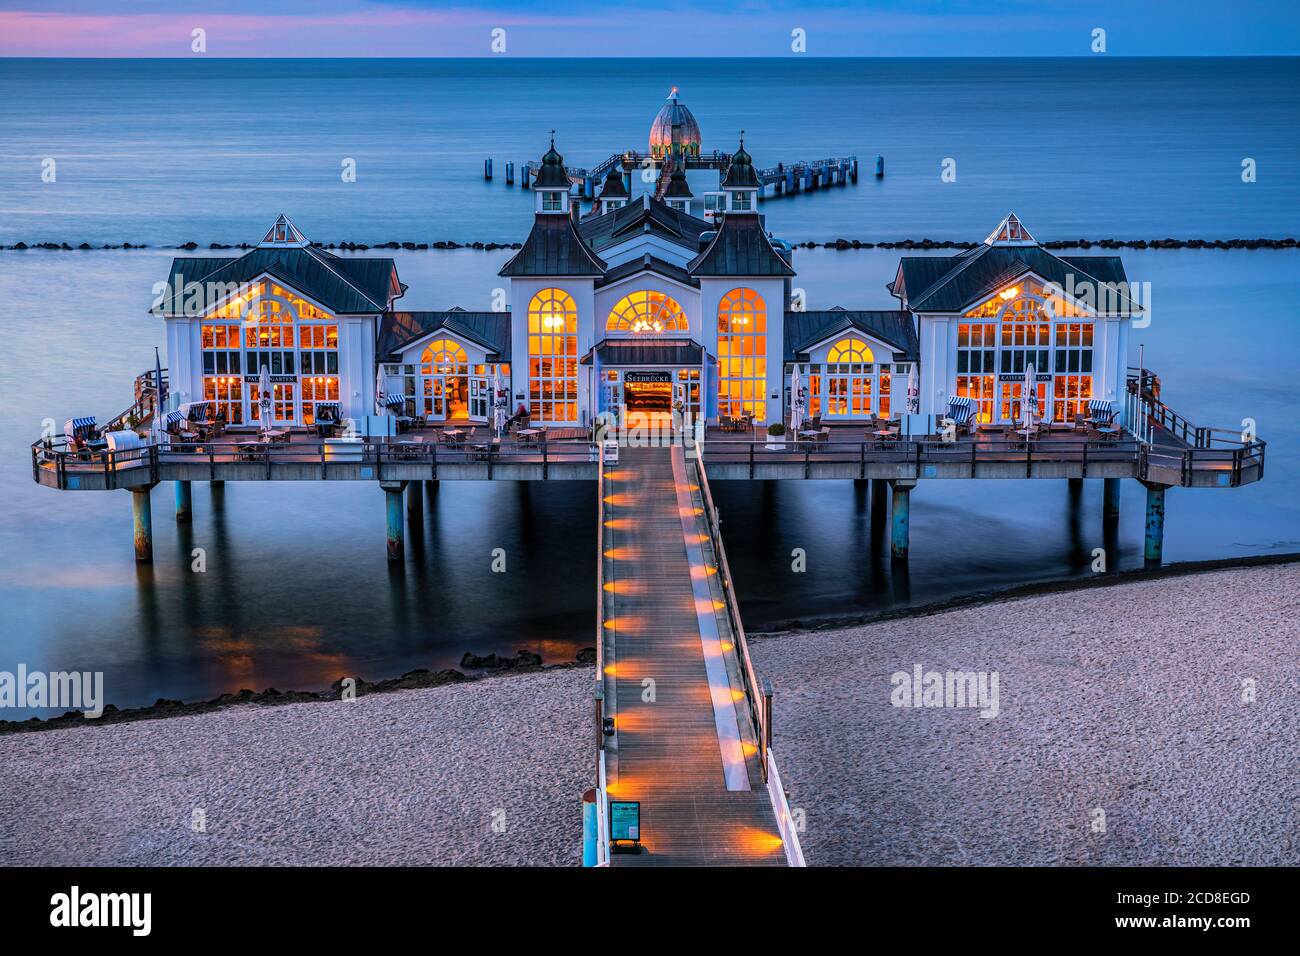 Sellin Pier (deutsch: Seebrücke Sellin) ist eine Seebrücke im Ostseebad Sellin auf der deutschen Insel Rügen. Der Pier hat ein Restaurant in der Nähe Stockfoto